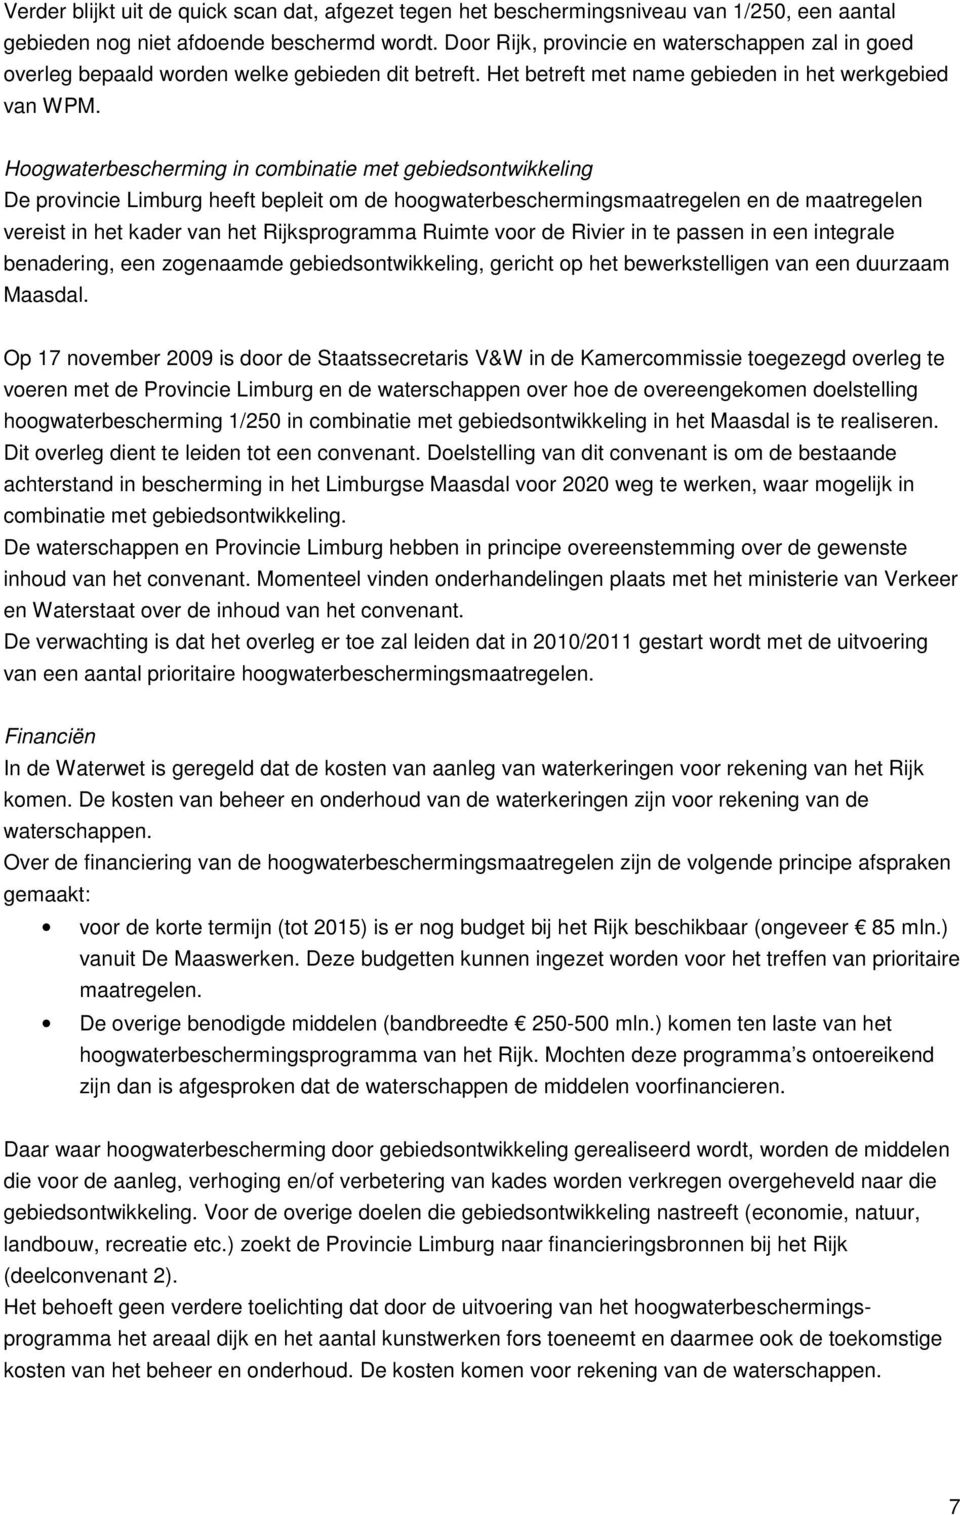 Hoogwaterbescherming in combinatie met gebiedsontwikkeling De provincie Limburg heeft bepleit om de hoogwaterbeschermingsmaatregelen en de maatregelen vereist in het kader van het Rijksprogramma